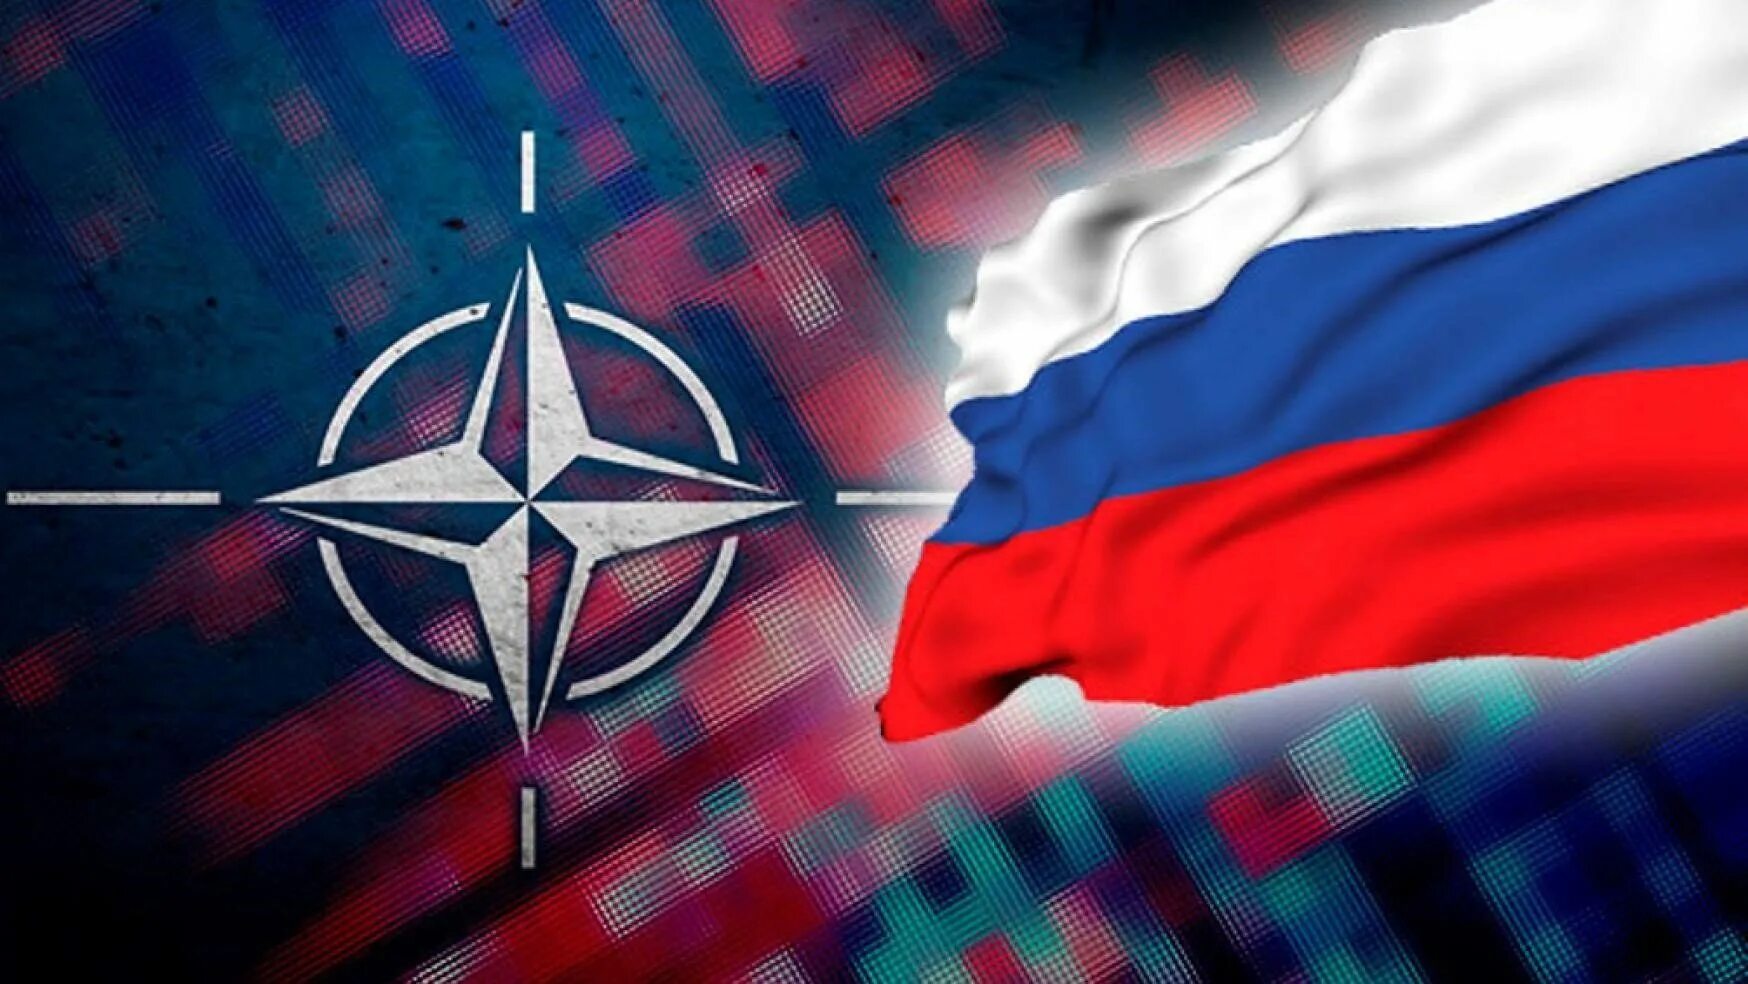 300000 нато. Противостояние России и НАТО. Флаг США И НАТО. Россия противостоит НАТО. Флаг России против флагов НАТО.